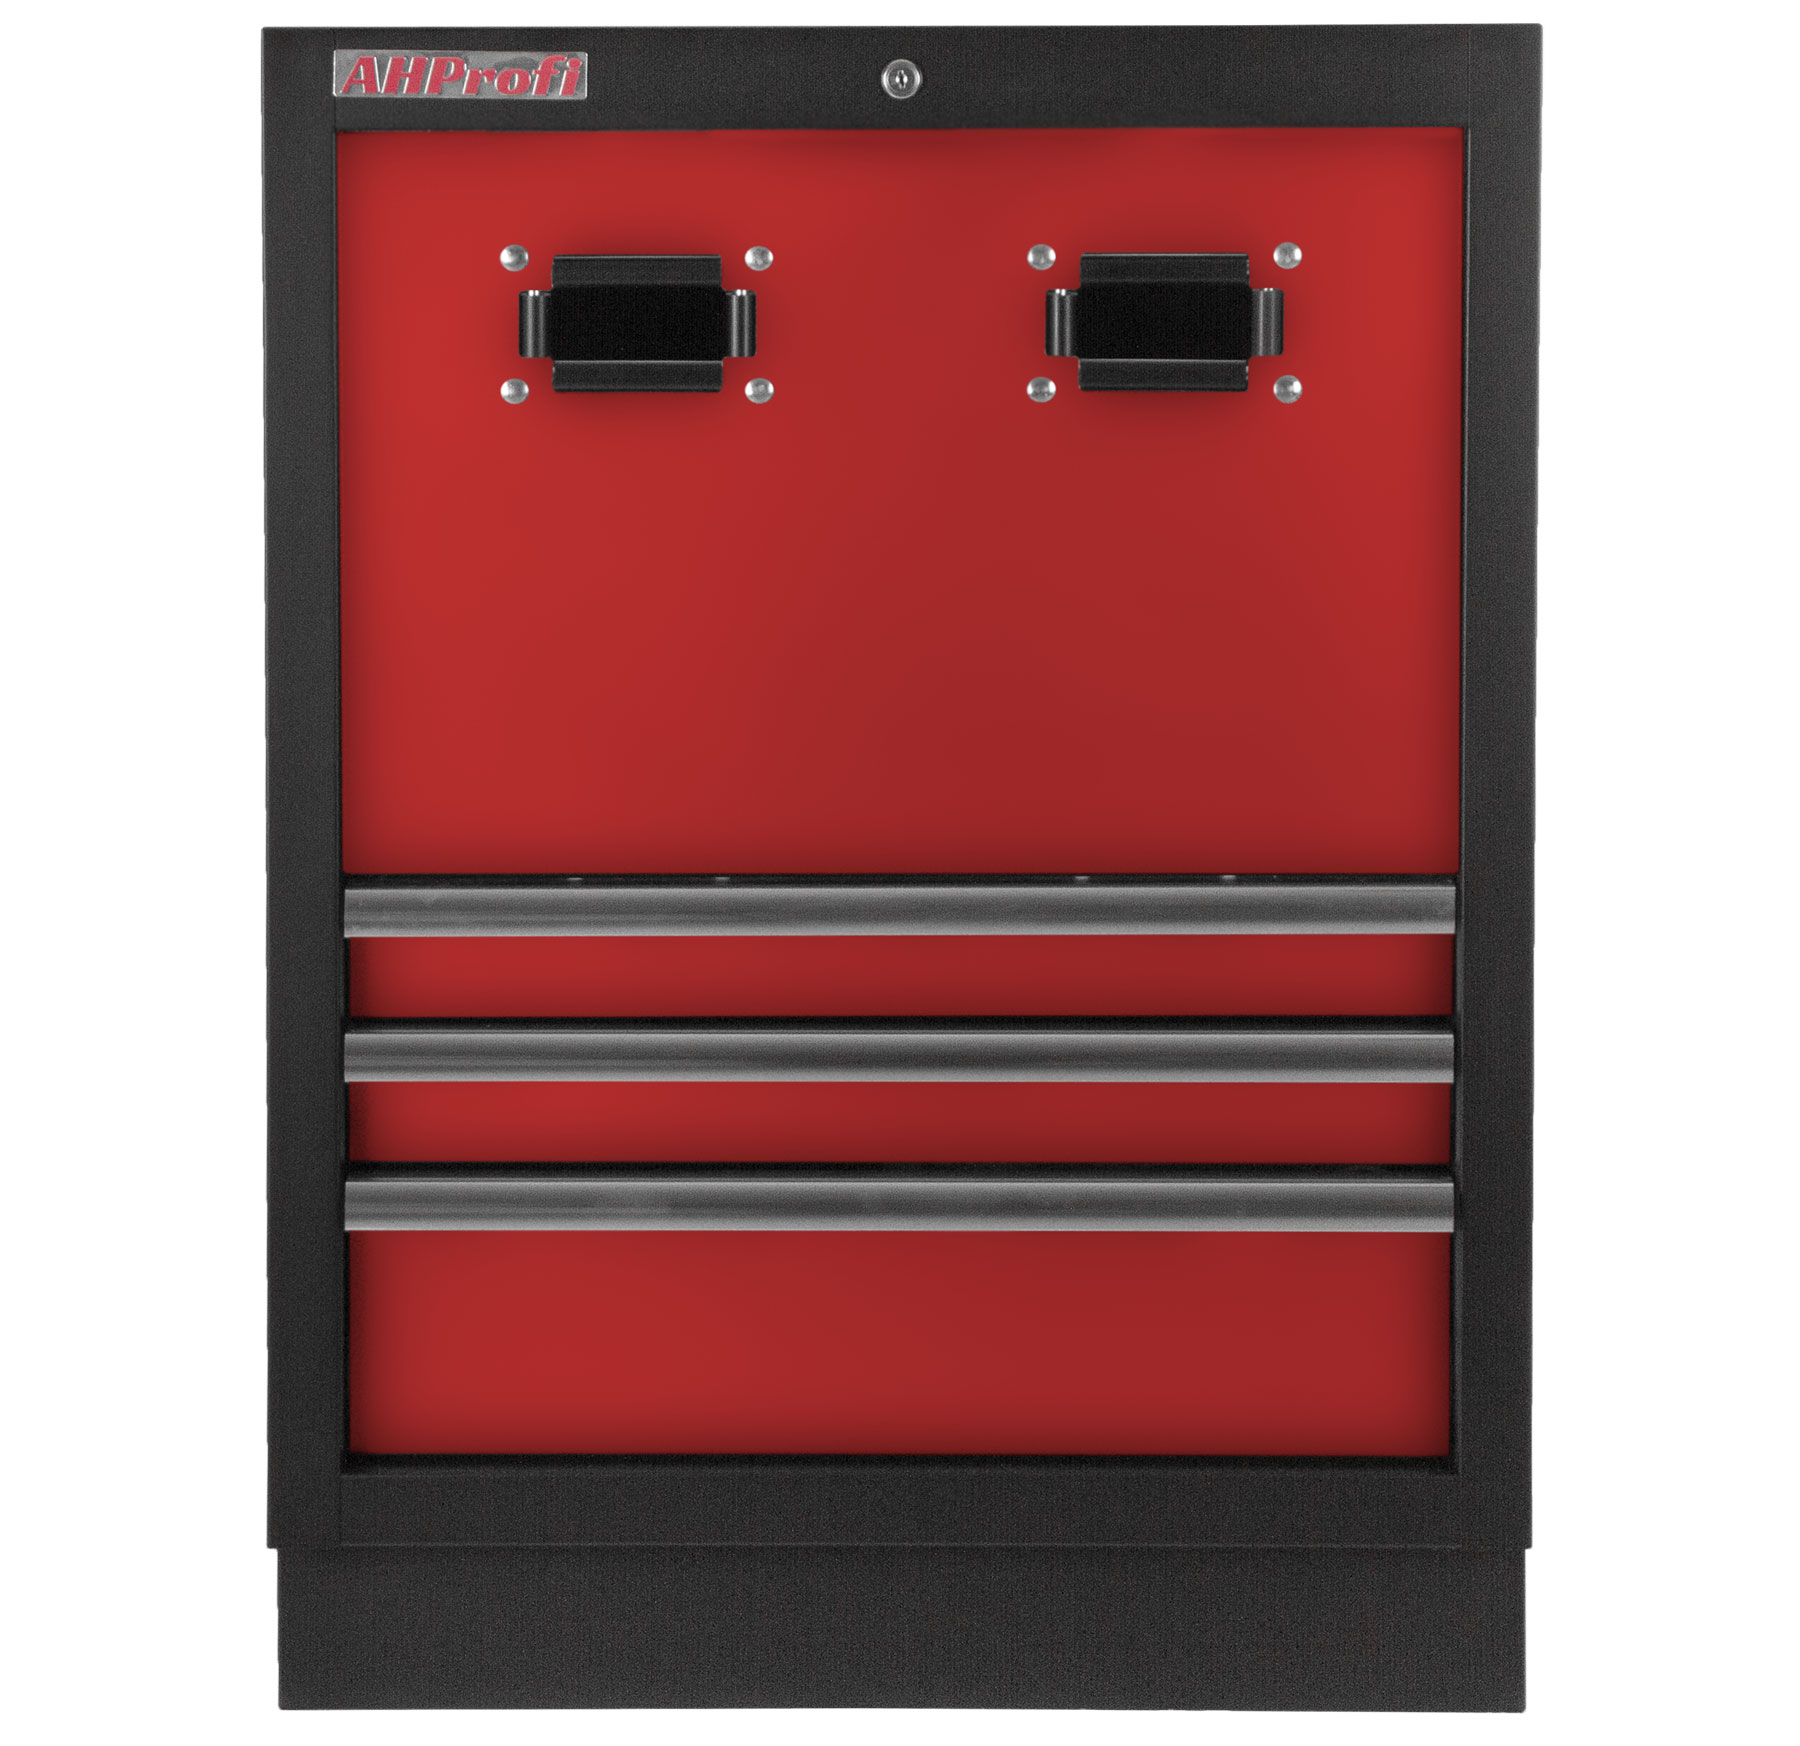 Celokovová dílenská skříňka PROFI RED na navijáky, 3 zásuvky - RTGC1303A